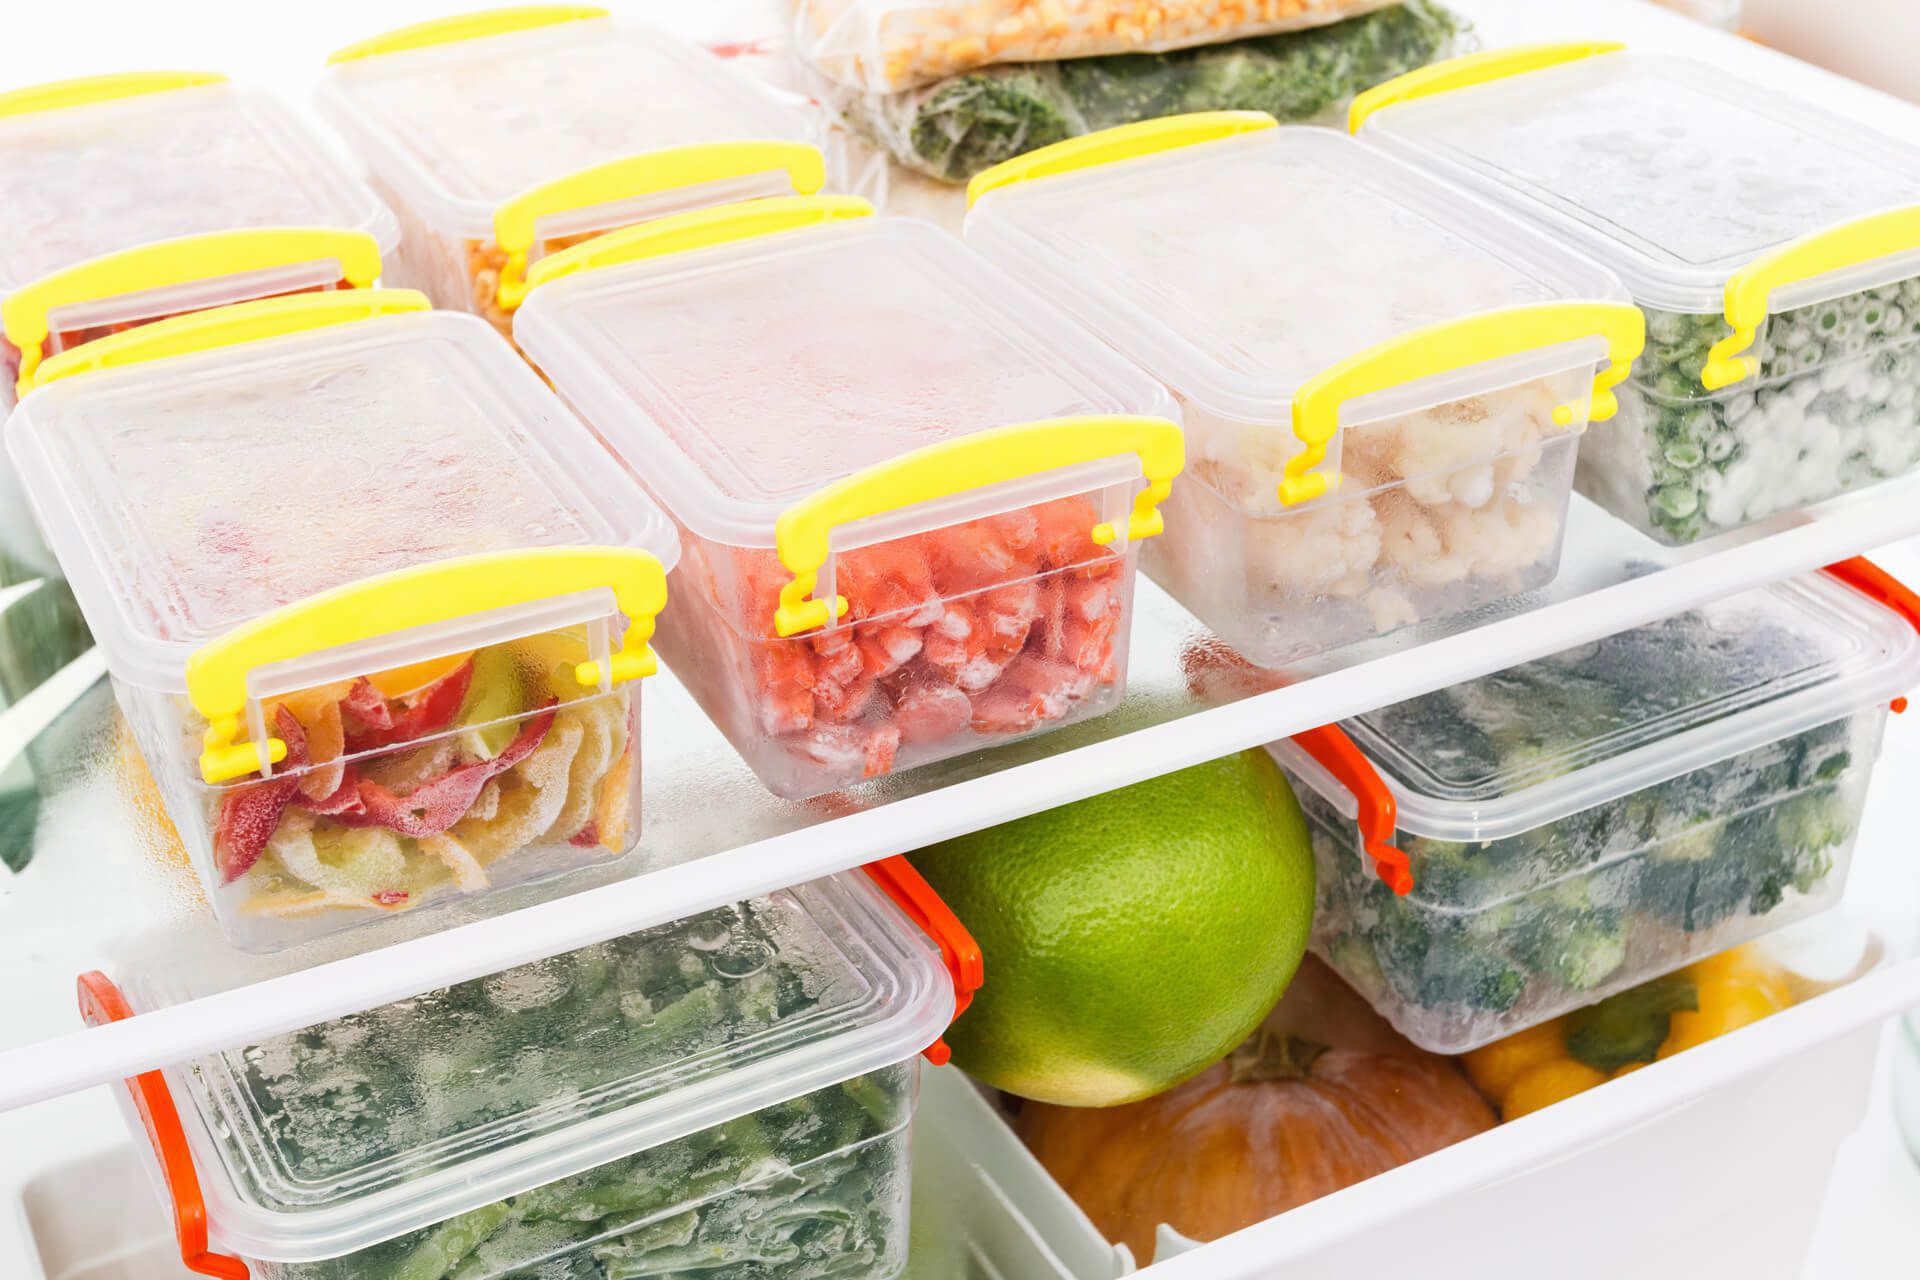 Thời gian bảo quản thực phẩm trong tủ lạnh